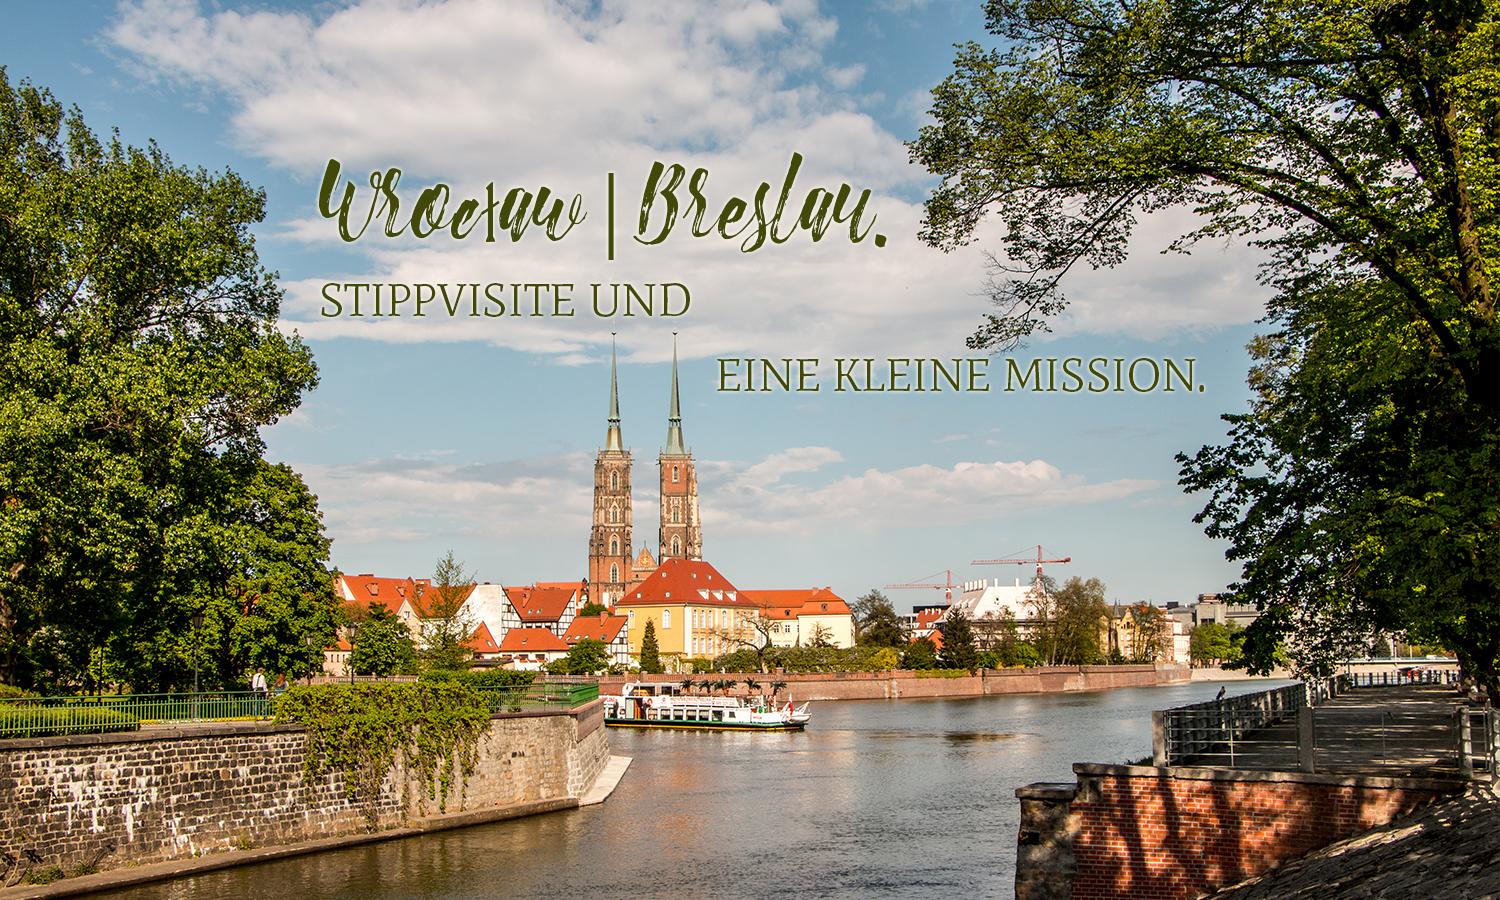 Wroclaw | Breslau. Stippvisite und eine kleine Mission.